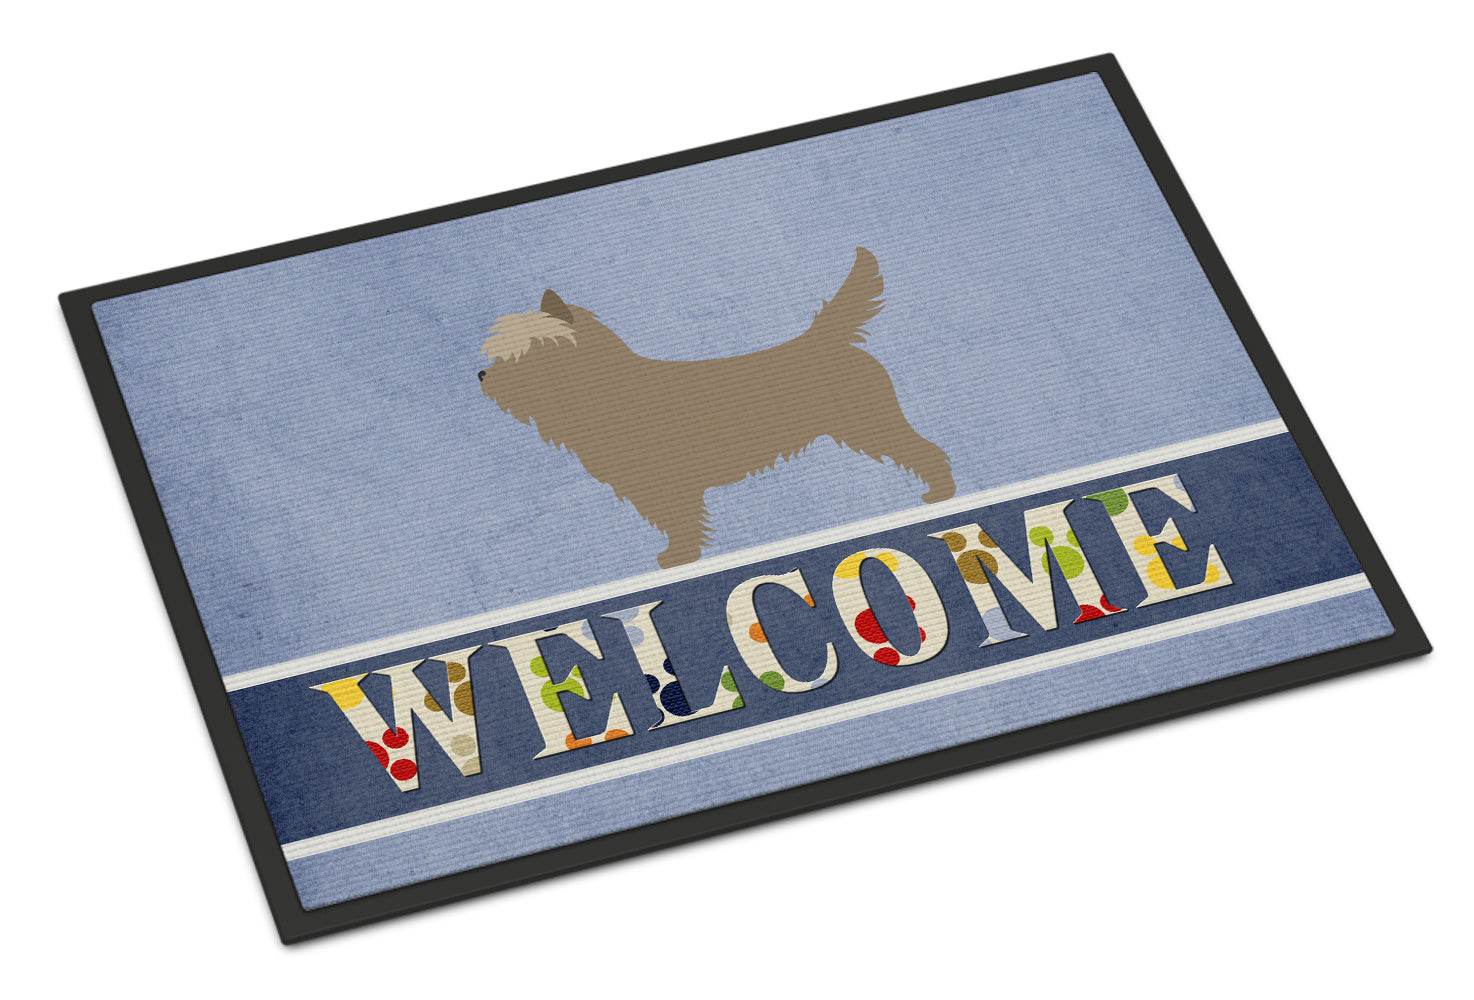 Cairn Terrier Welcome Indoor or Outdoor Mat 18x27 BB8286MAT - the-store.com